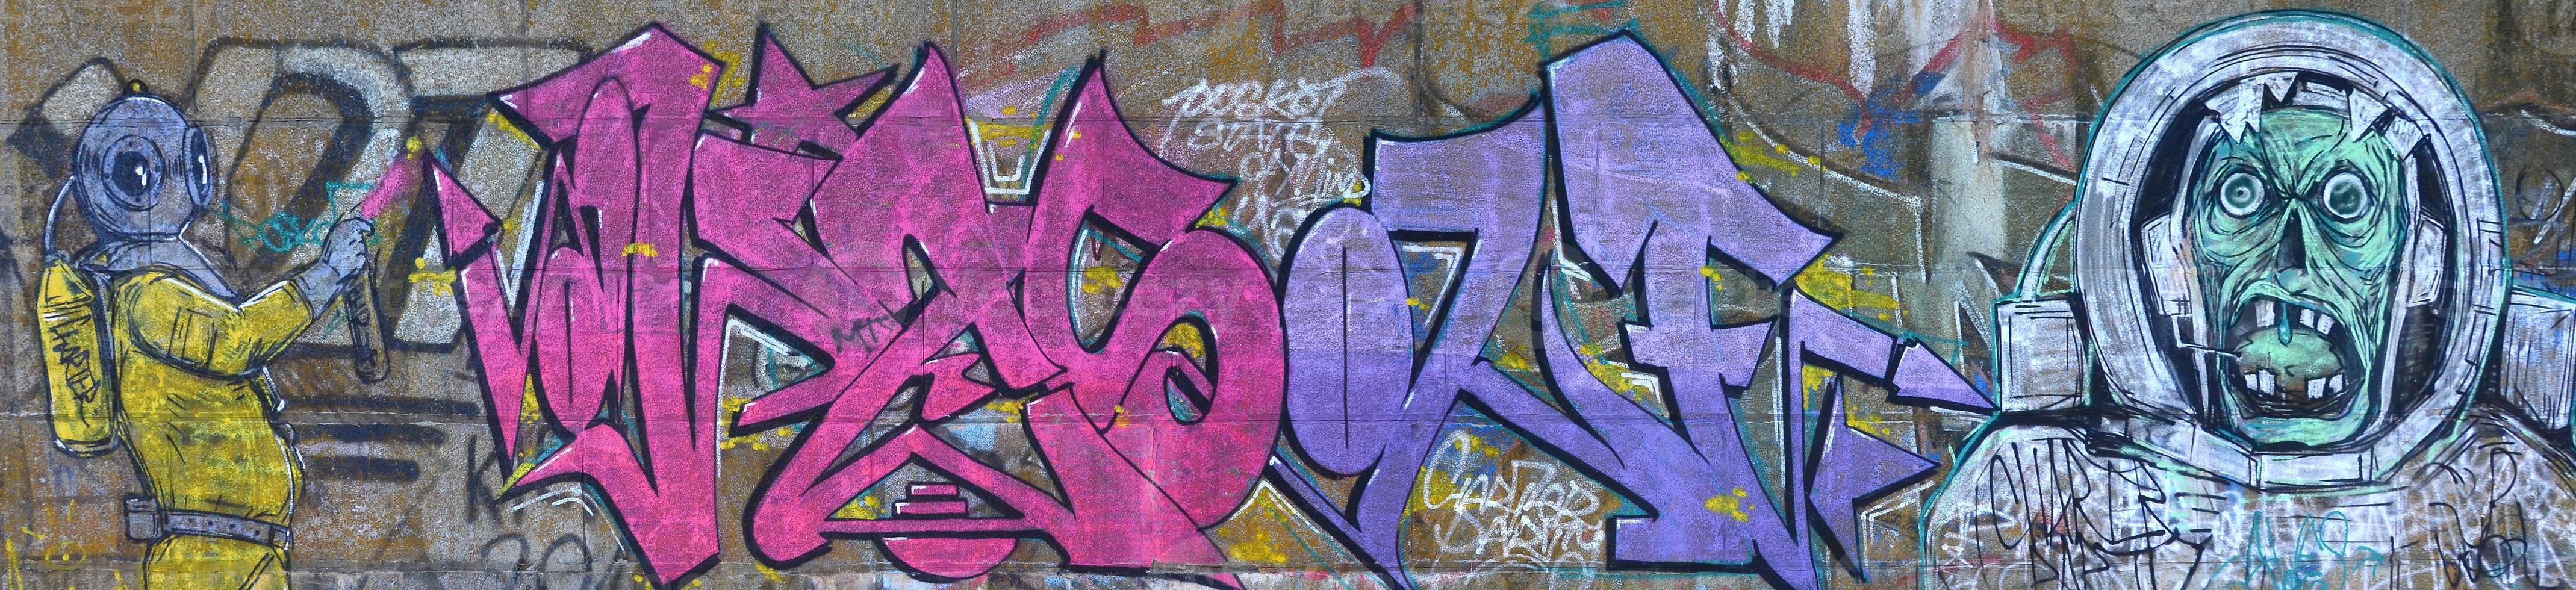 Fragment von Graffiti-Zeichnungen. Die alte Wand ist mit Farbflecken im Stil der Straßenkunstkultur dekoriert. gruseliger Taucher foto